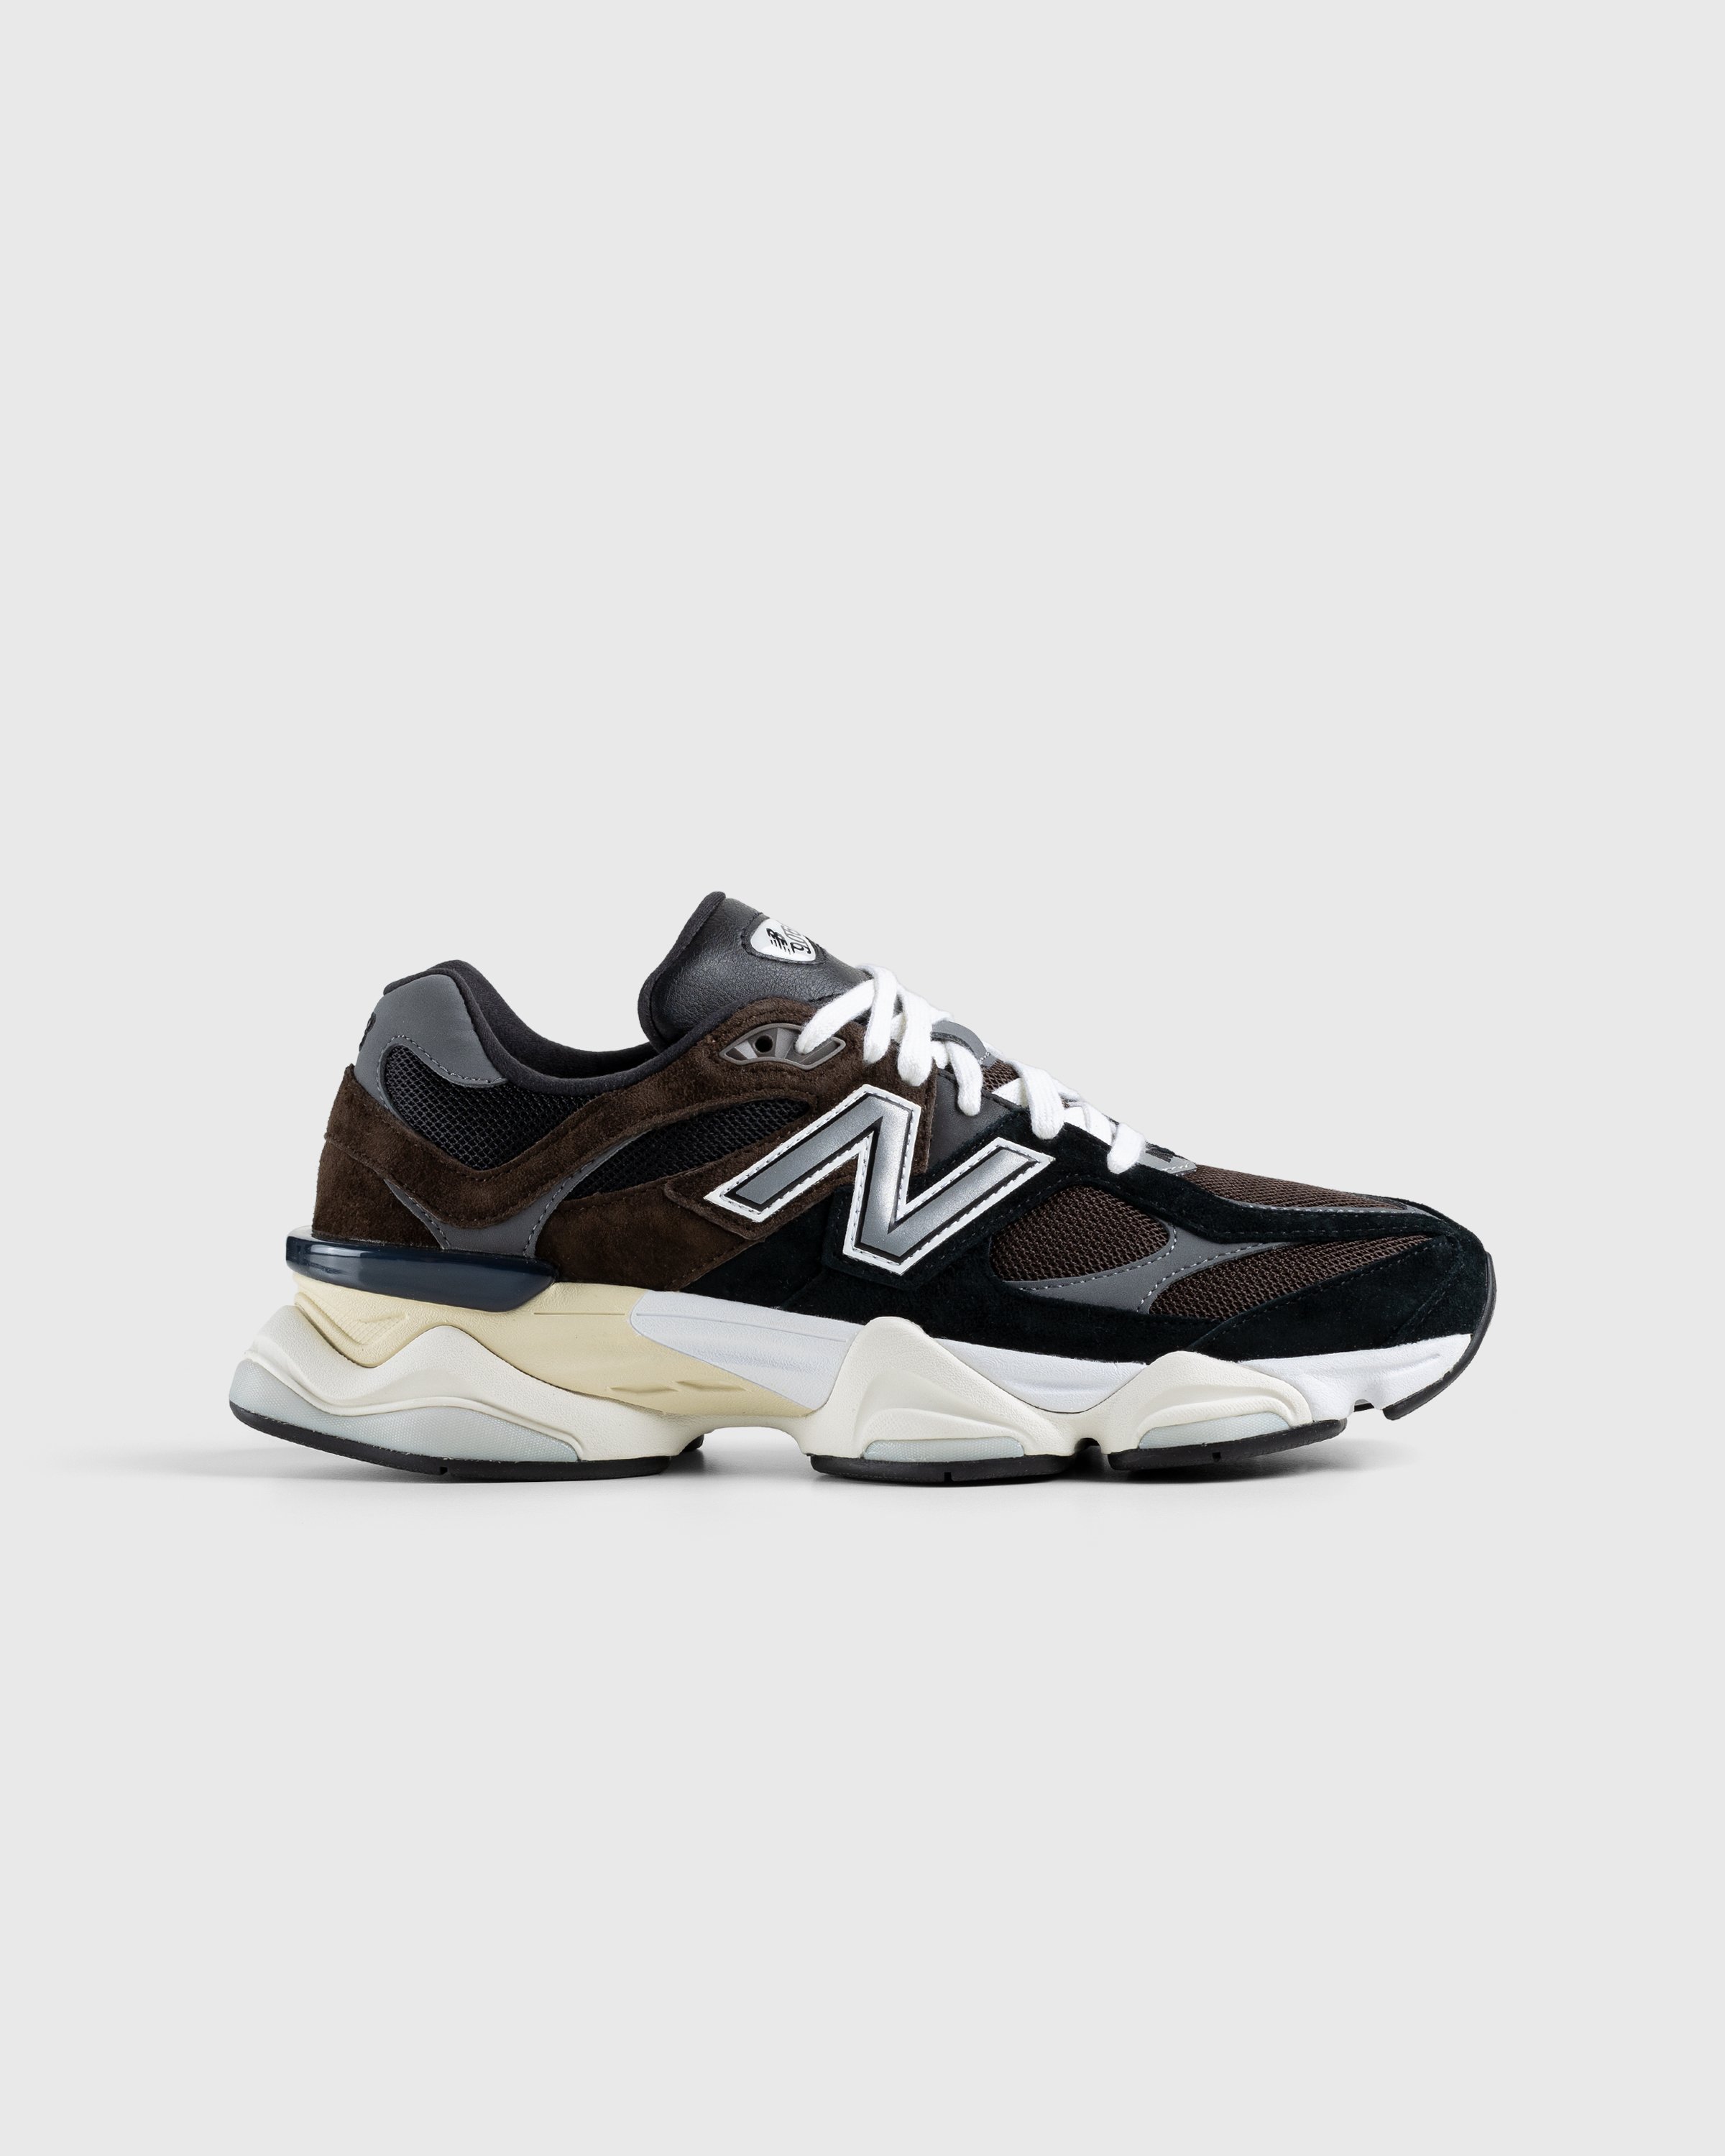 New Balance - U9060BRN Dark Brown - Footwear - Brown - Image 1